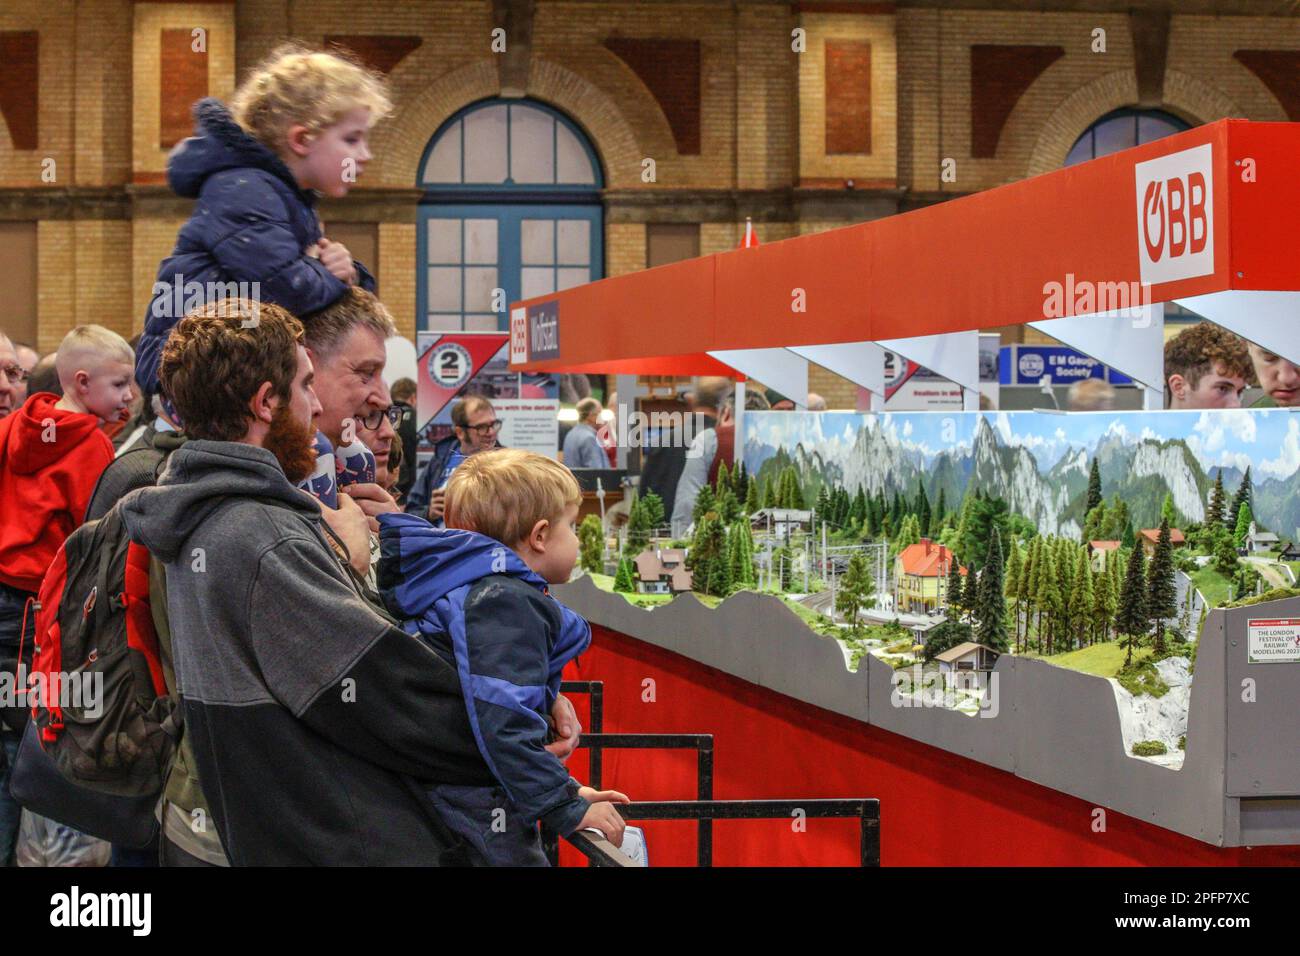 Londra UK 18 marzo 2023 Alexandra Palace ha ospitato il London Festival of Railway Modelling.A celebrazione del talento modellistico, con modellini ferroviari, modellini aerei, barche, edifici, Camion e altro.Paul Quezada-Neiman/Alamy Live News Foto Stock